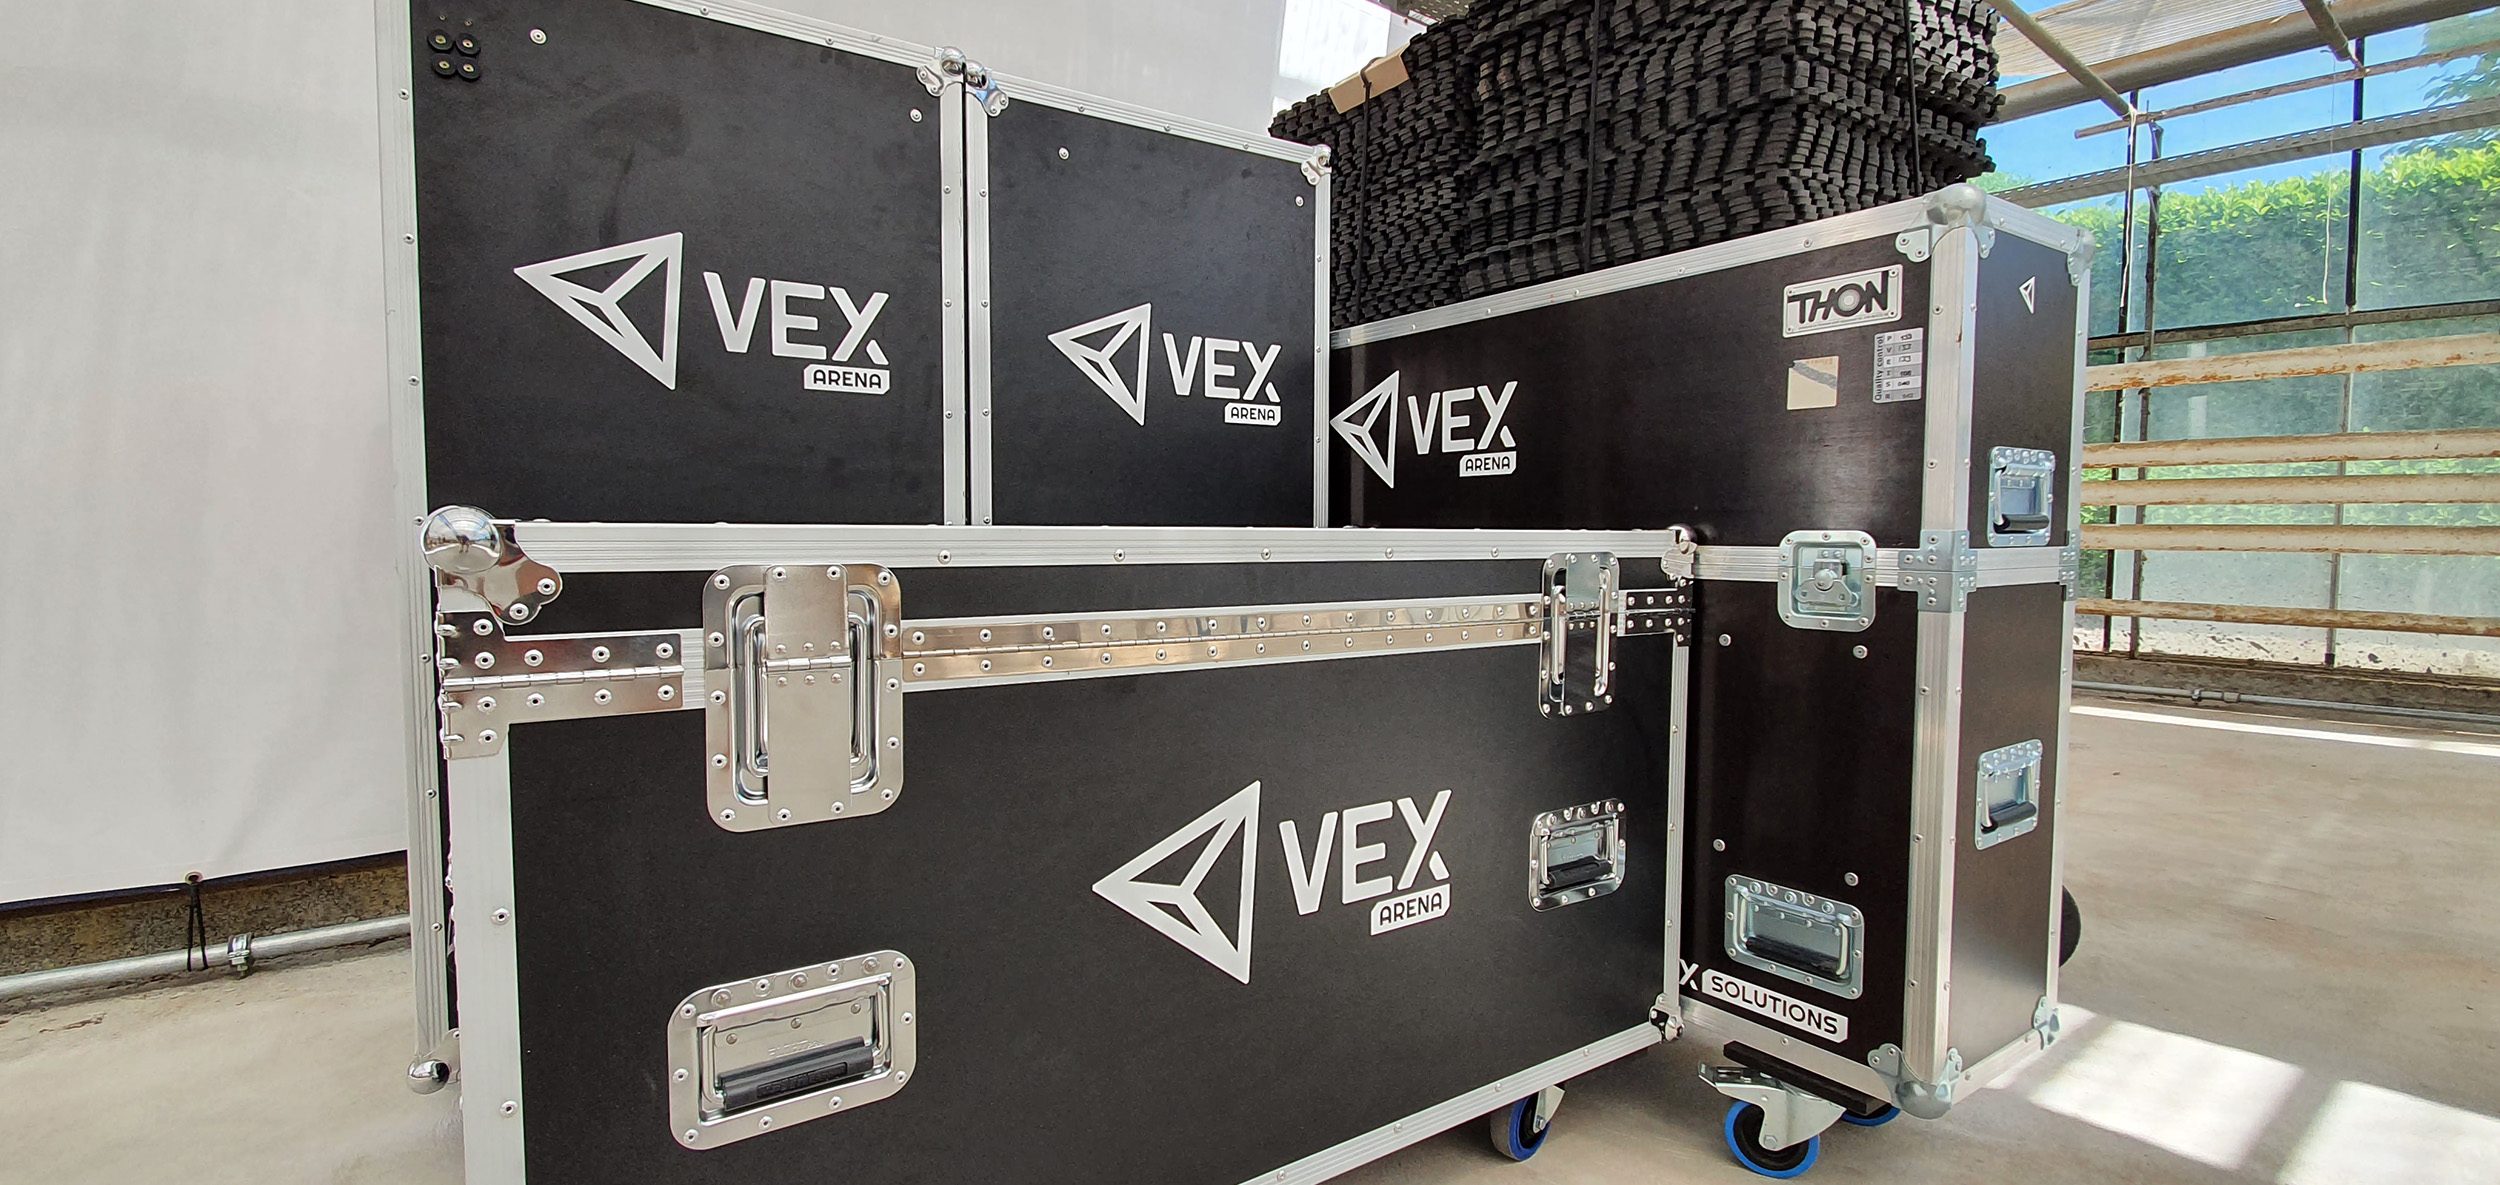 VEX Arena -mobil, den eneste virtual reality -arena, du kan flytte rundt på